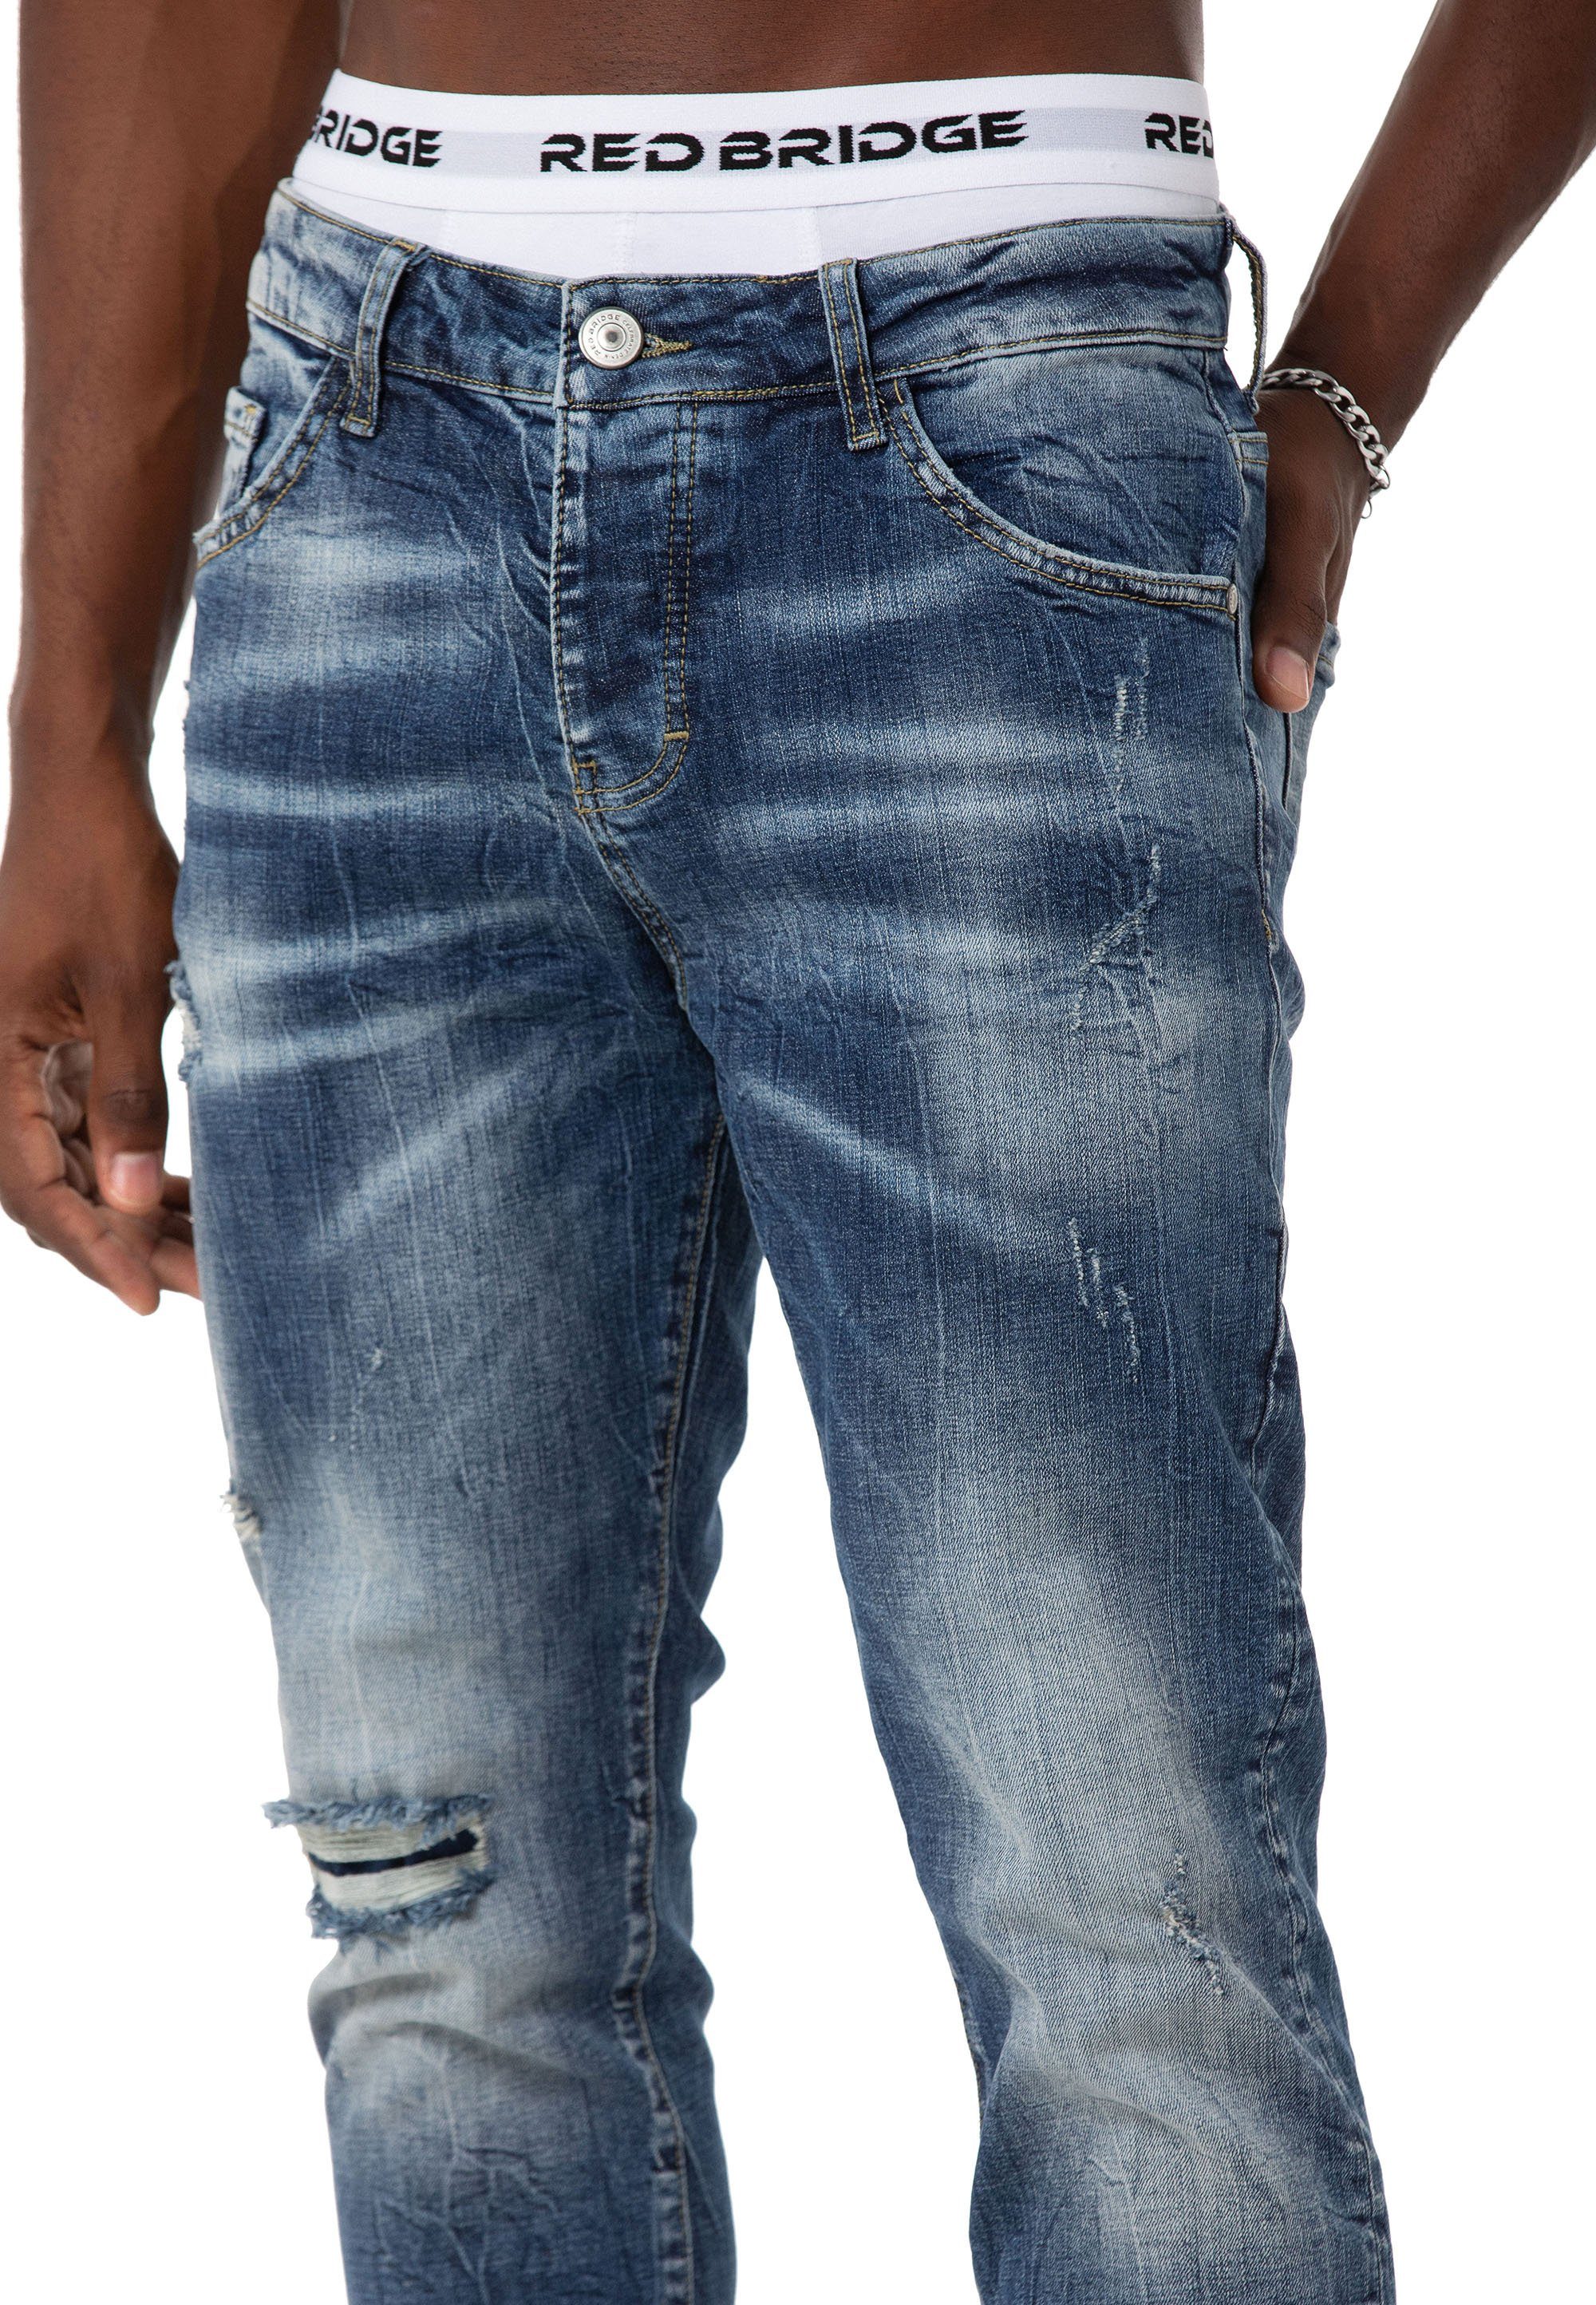 Denim Leg Pants RedBridge Blau Slim-fit-Jeans Straight Hose Distressed-Look